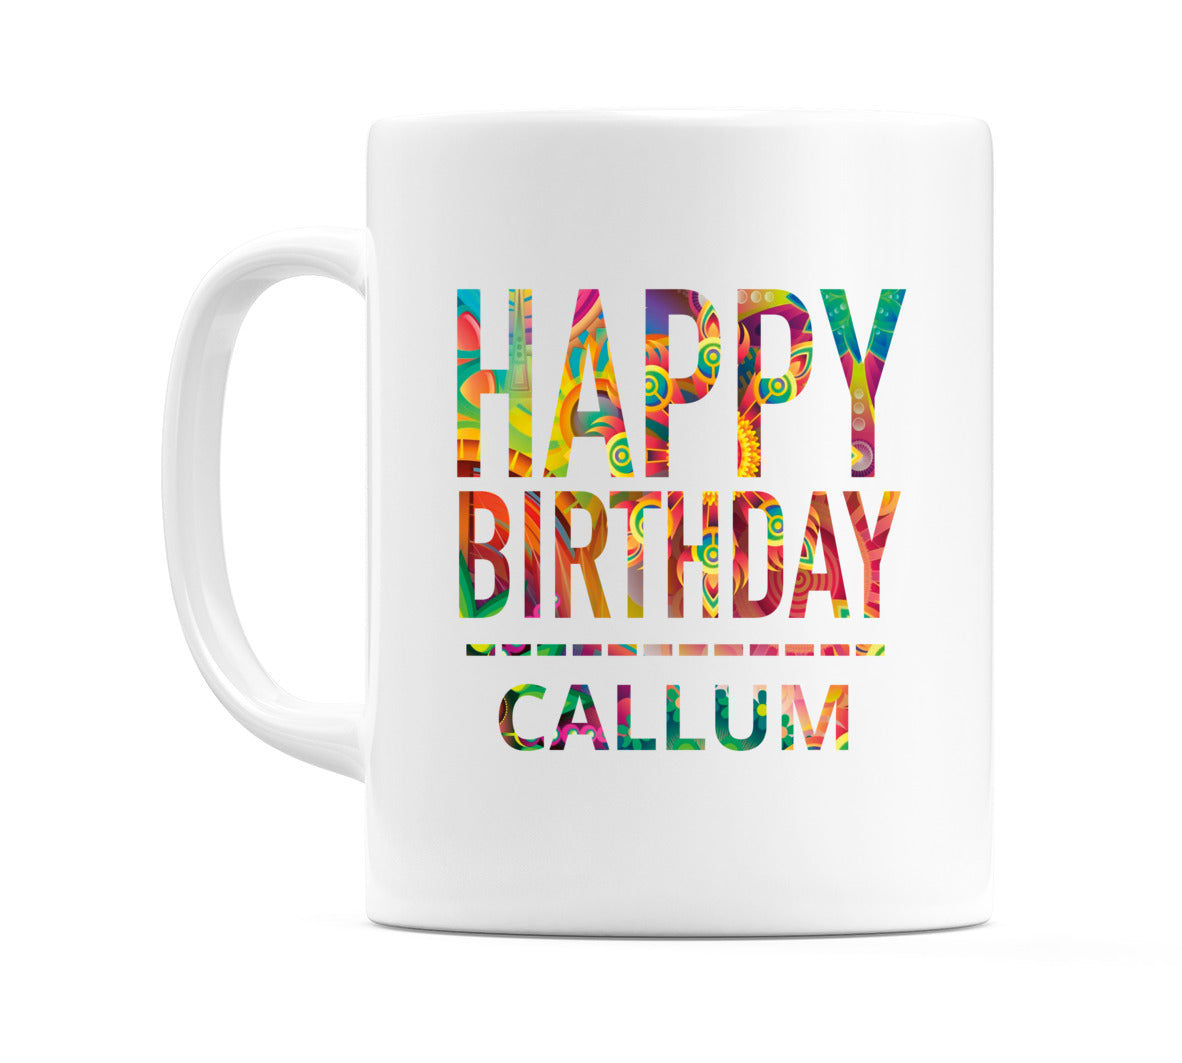 Happy Birthday Callum (Tie Dye Effect) Mug Cup by WeDoMugs